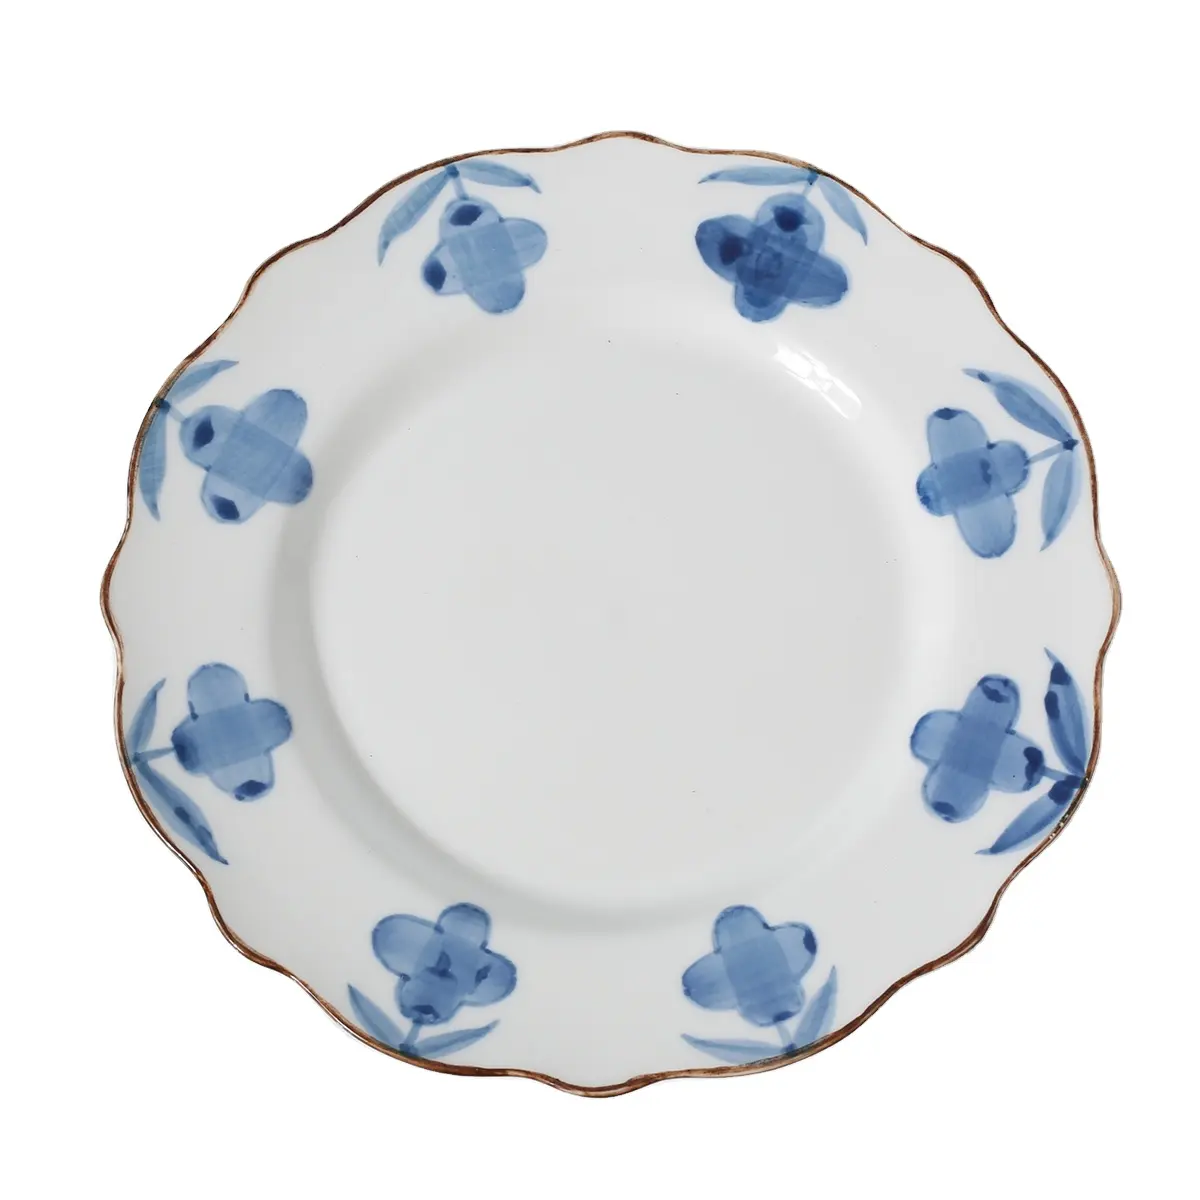 Factory Direct Hochzeits teller aus Porzellan hand bemalt blau weiß Blume Keramik schale